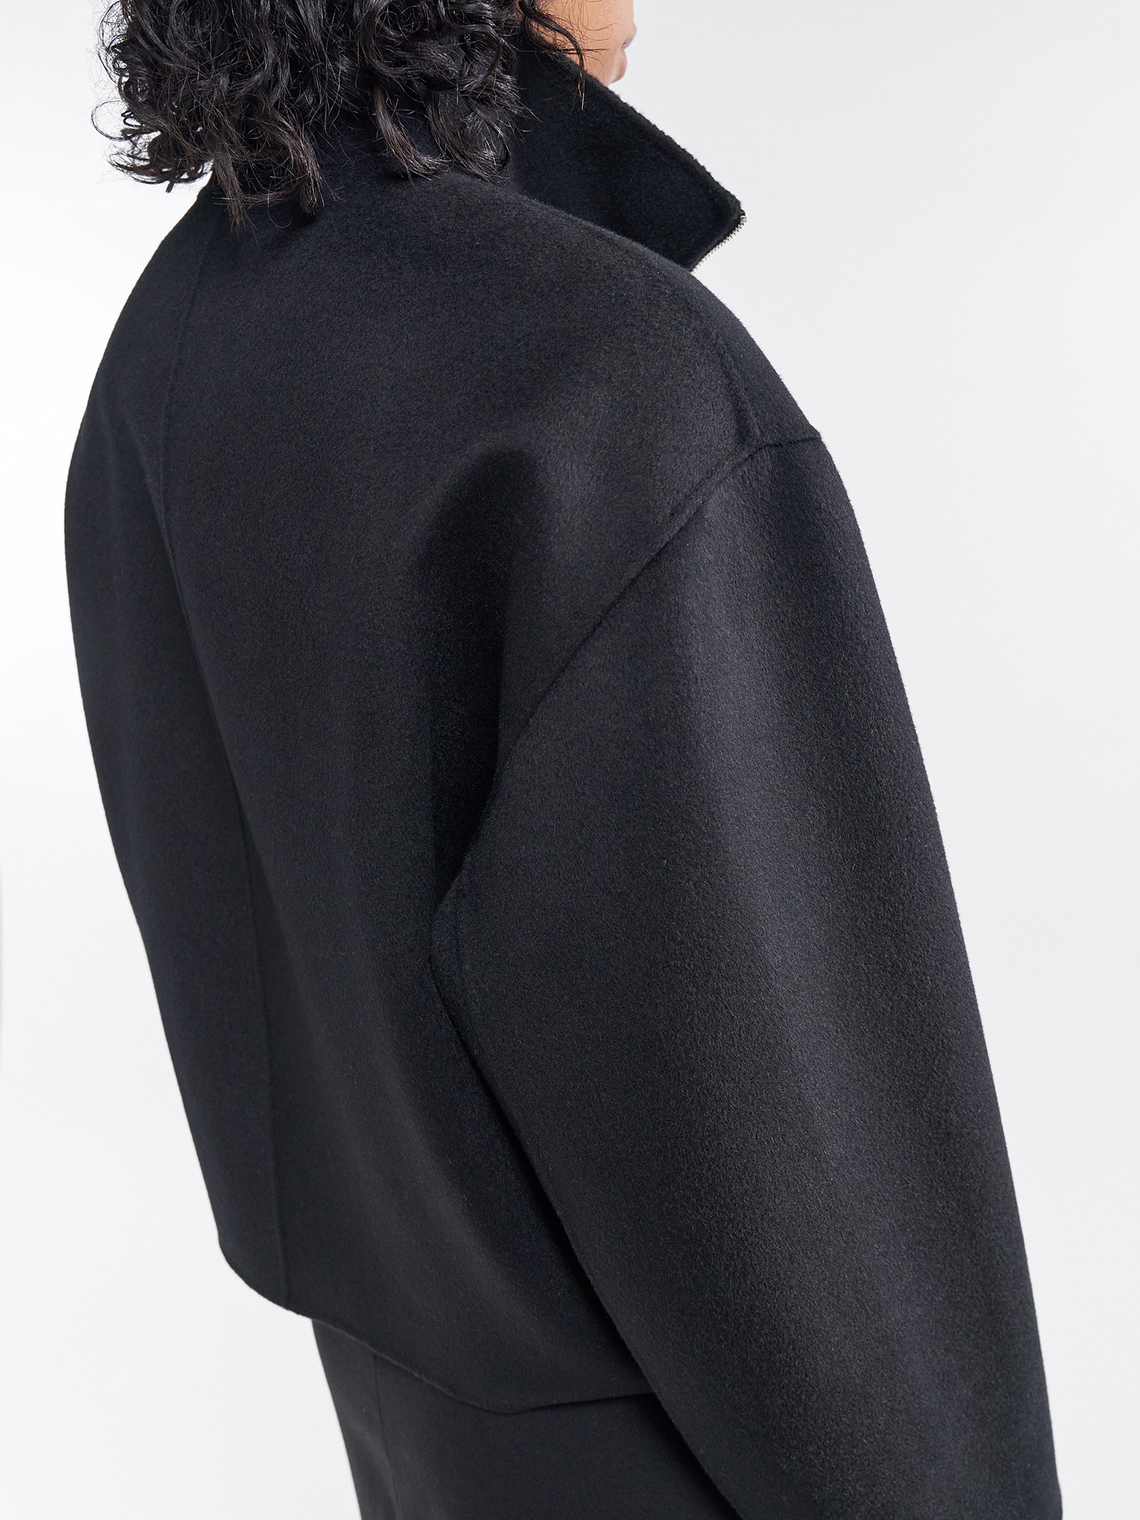 Dafina jacket by Filippa K - black